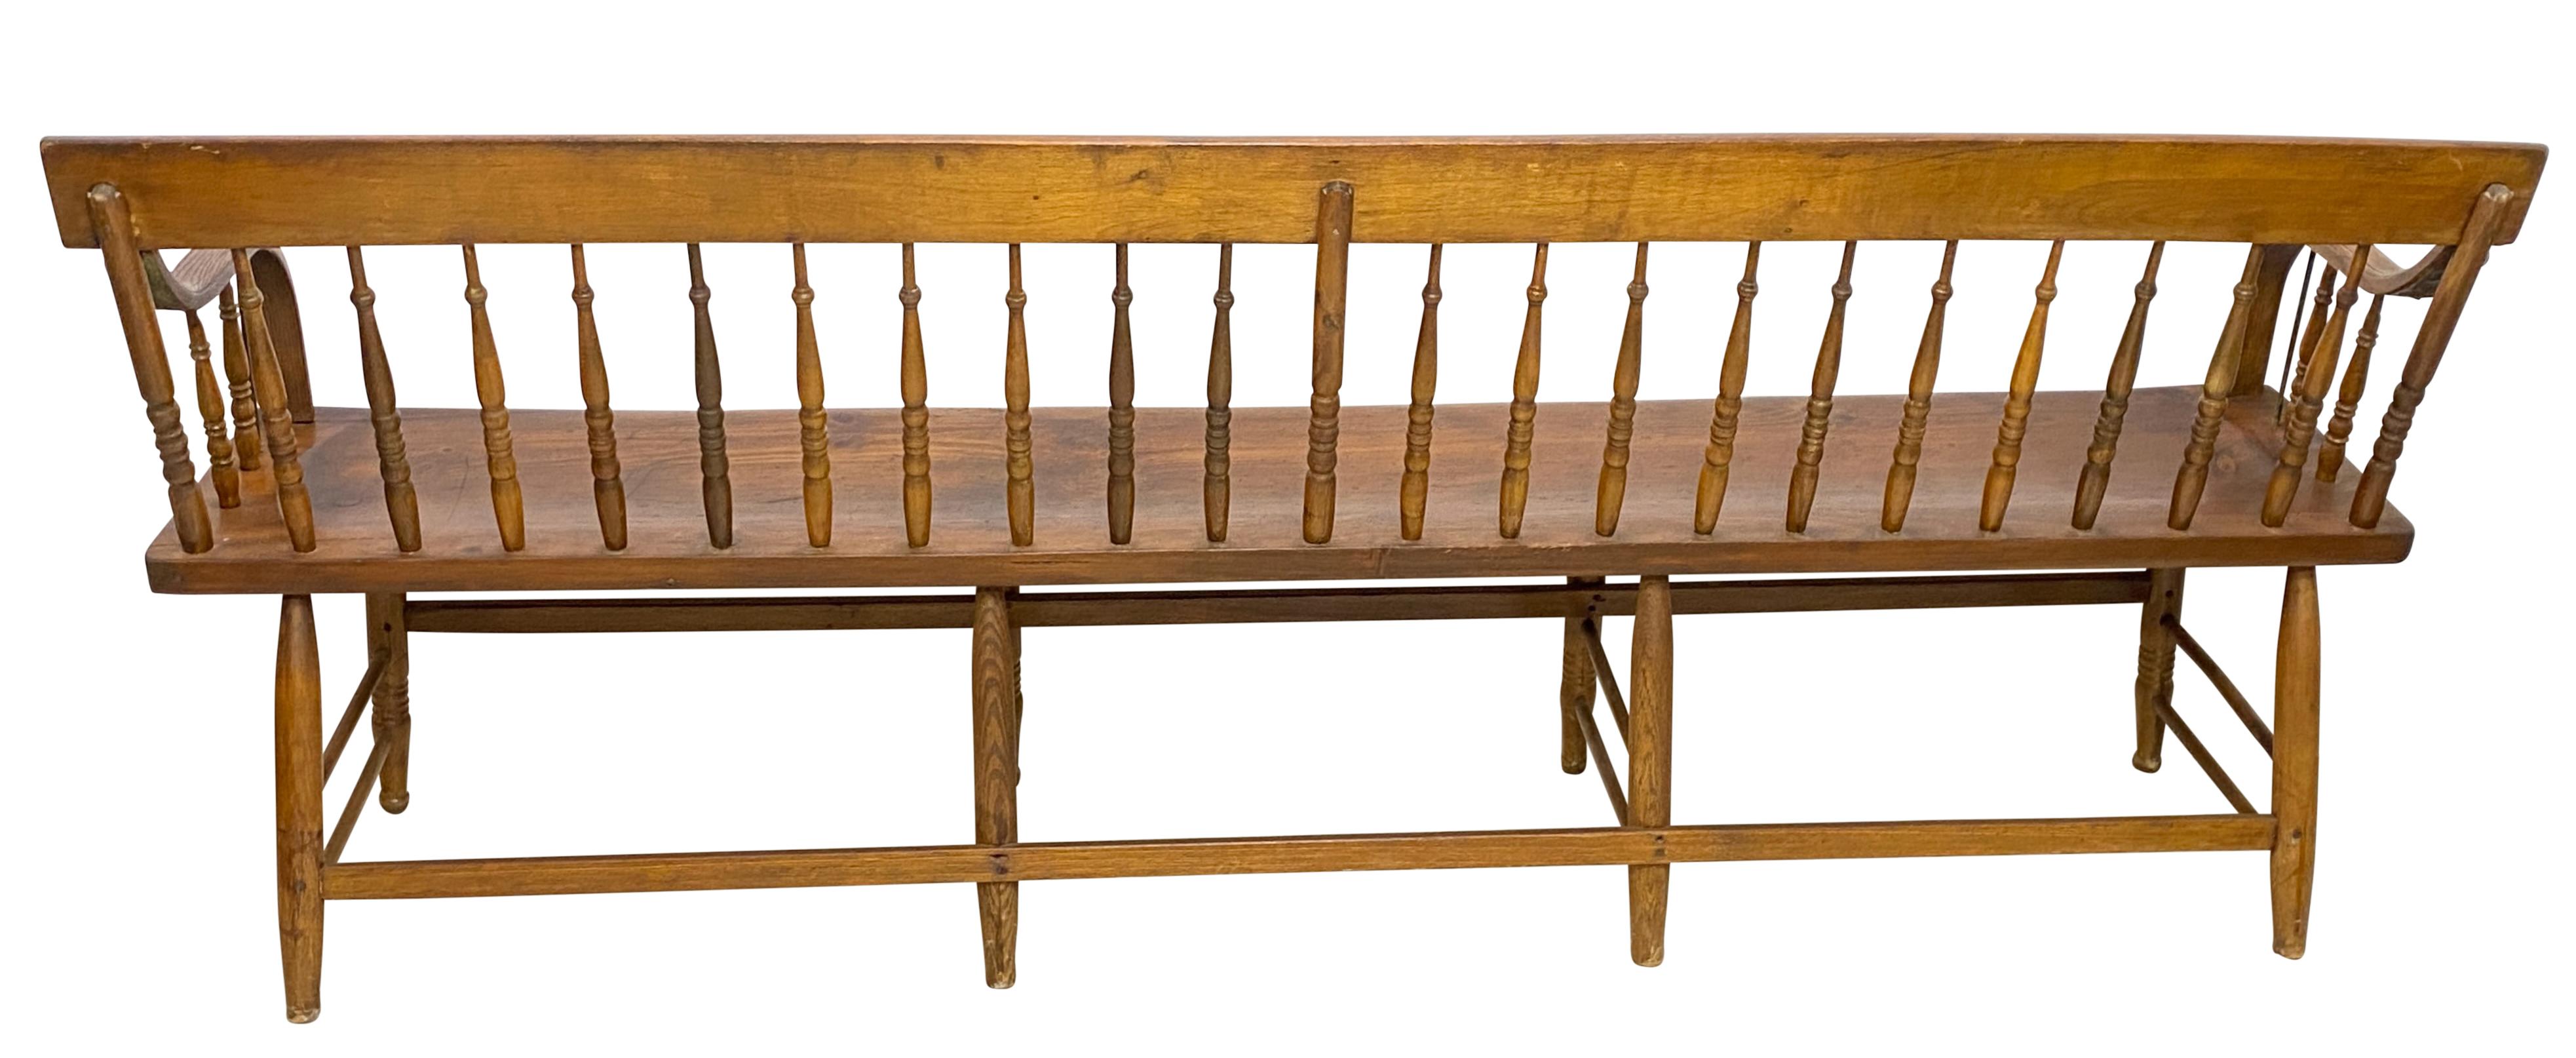 Oak Early 19th Century American Pine Windsor Style Deacon's Bench